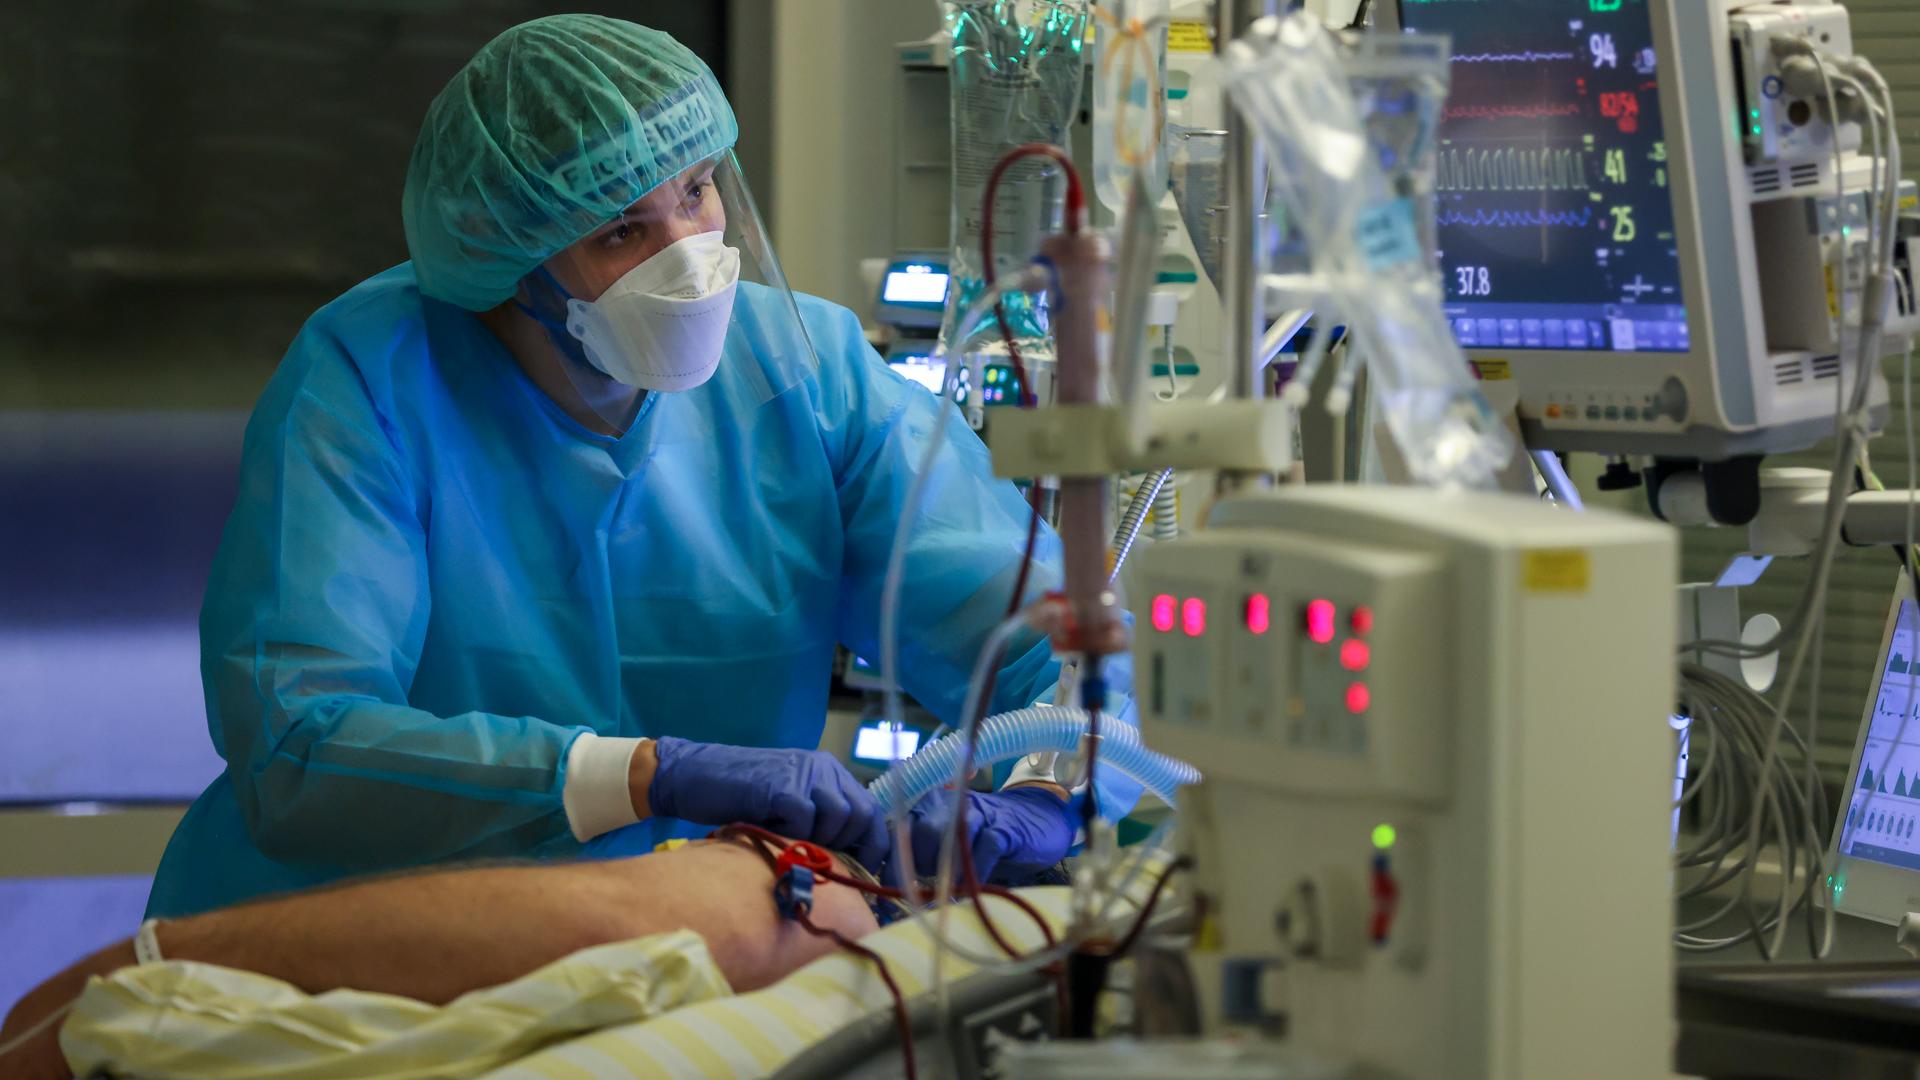 Ein Intensivpfleger versorgt einen Covid-19-Patienten auf einer Intensivstation. Um das Bett herum stehen mehrere medizinie Apparate. Der Pfleger schaut konzentriert auf einen Bildschirm.